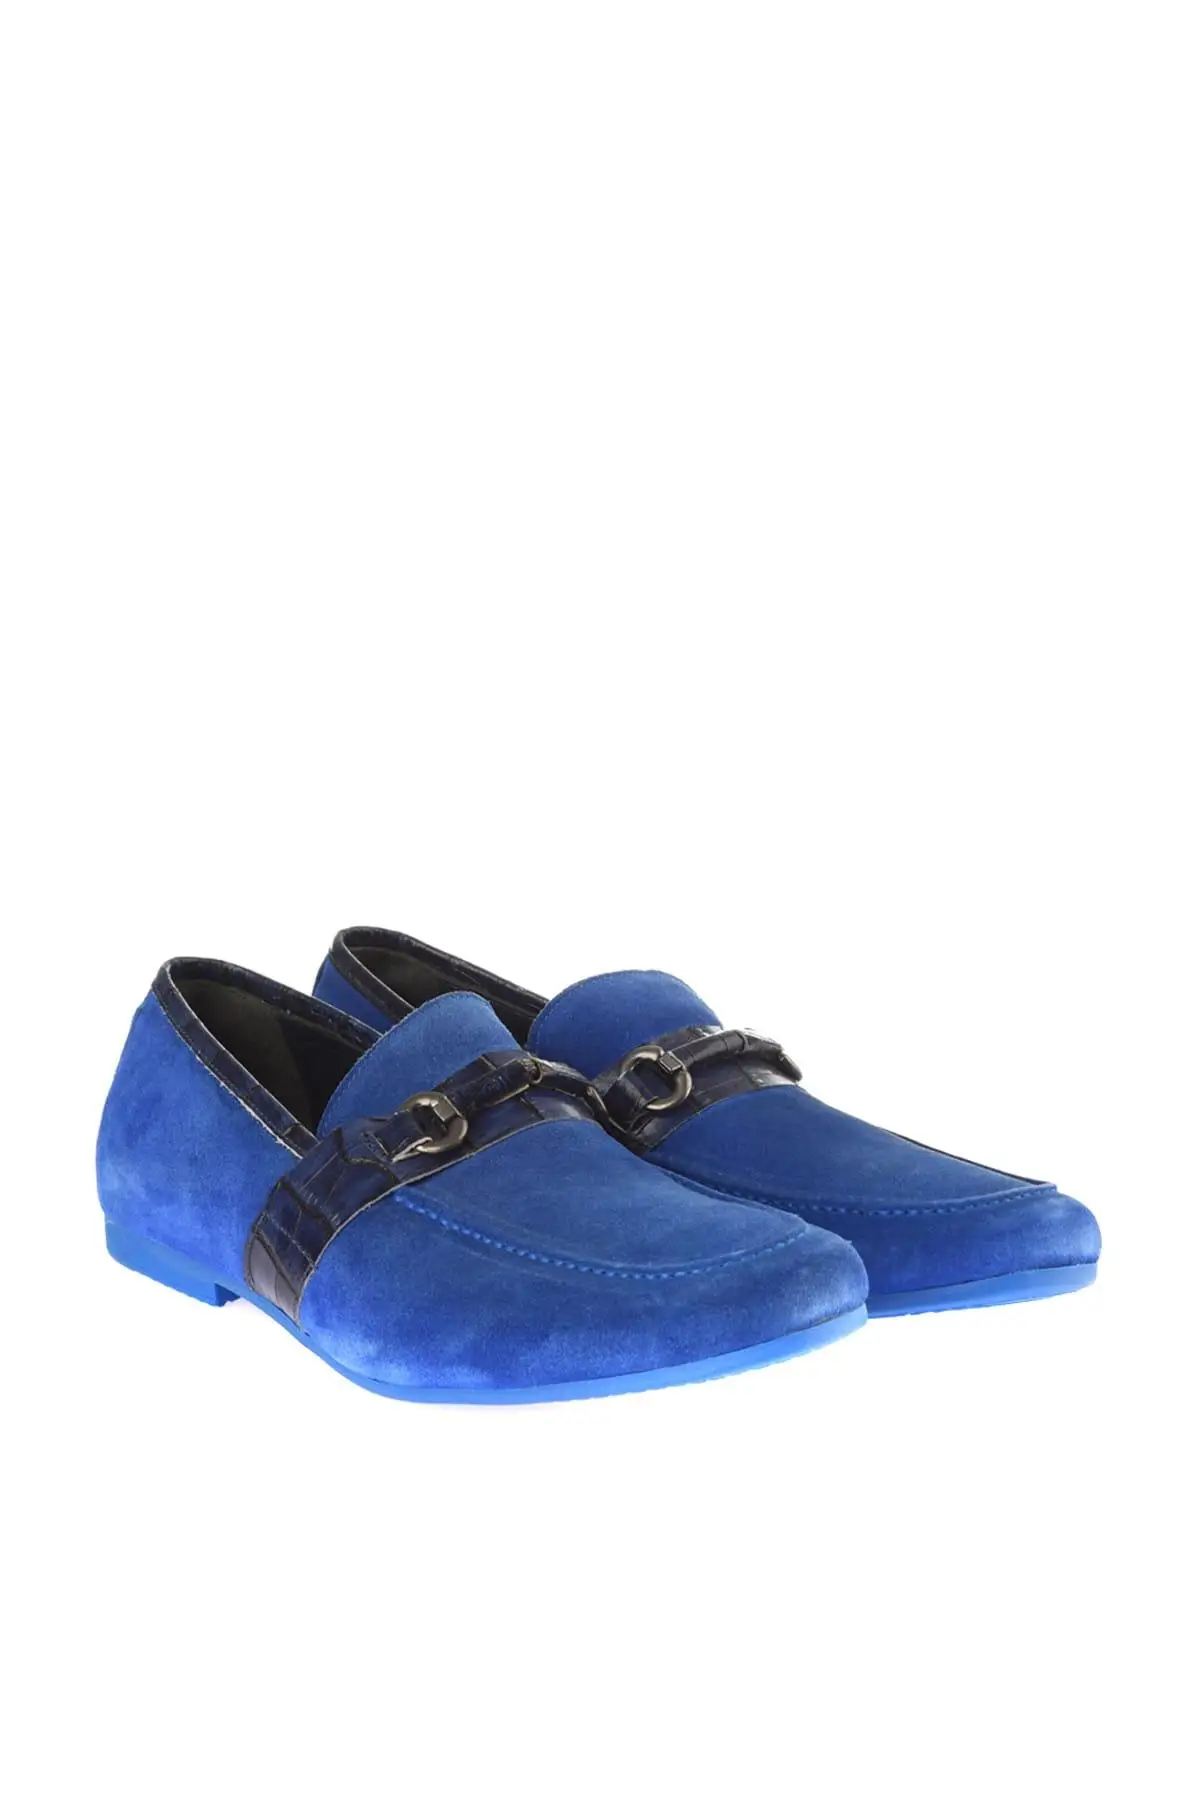 Темно-синие женские лоферы с жемчугом коллекция 120130003949 года | Обувь